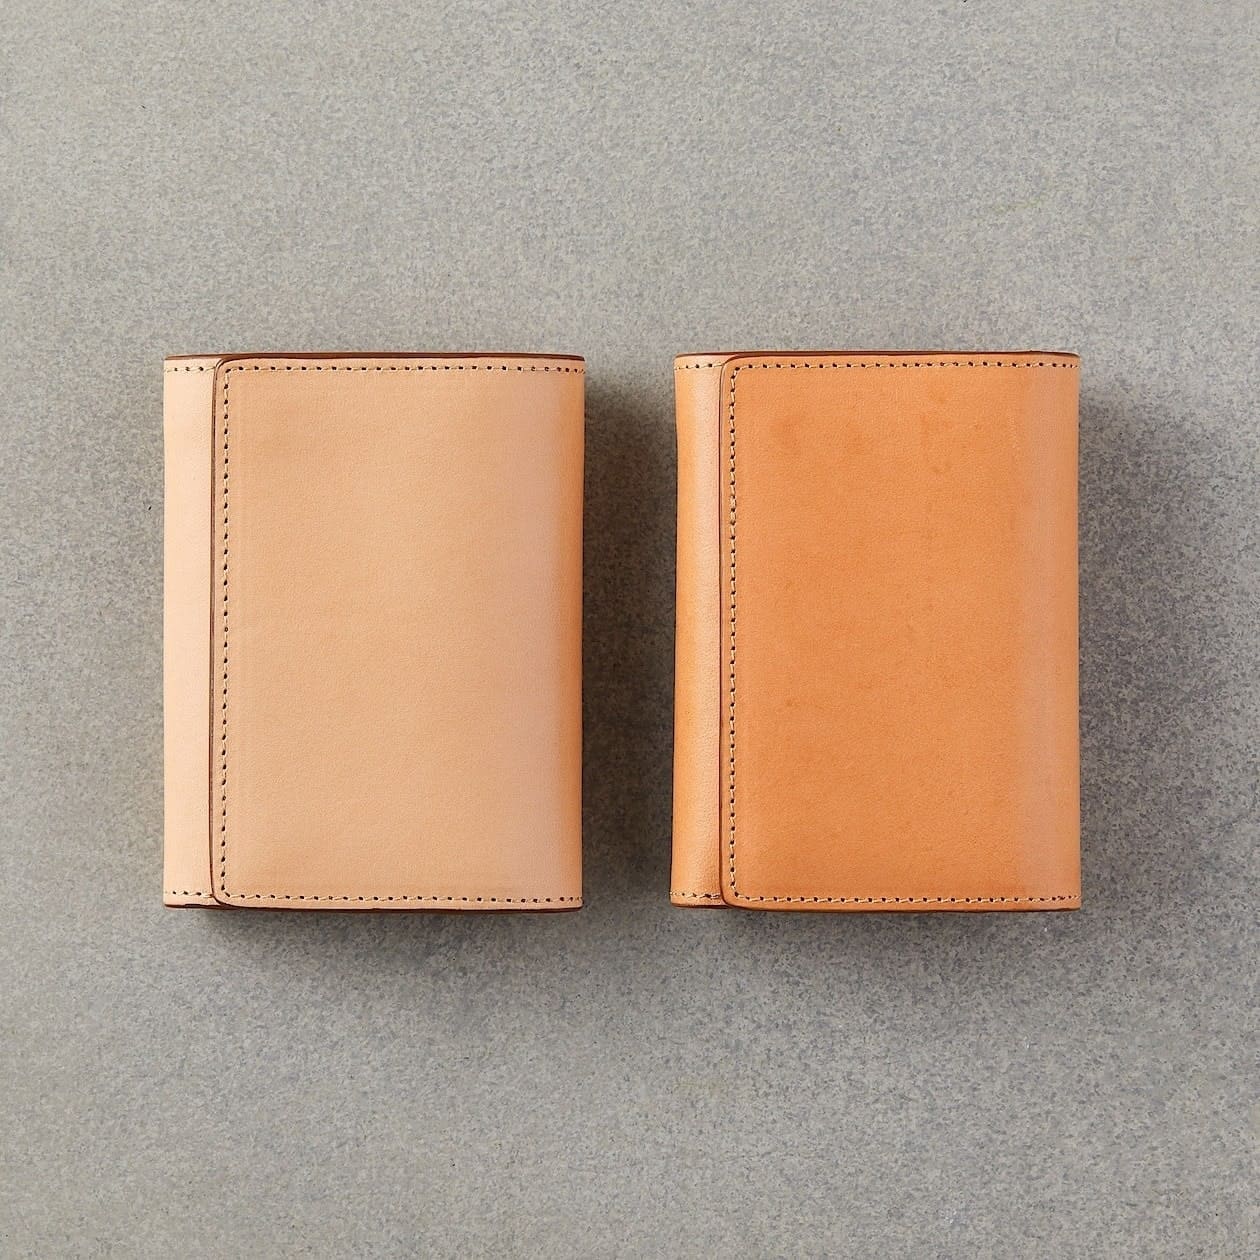 色が少し違う無印良品のレザー財布2個